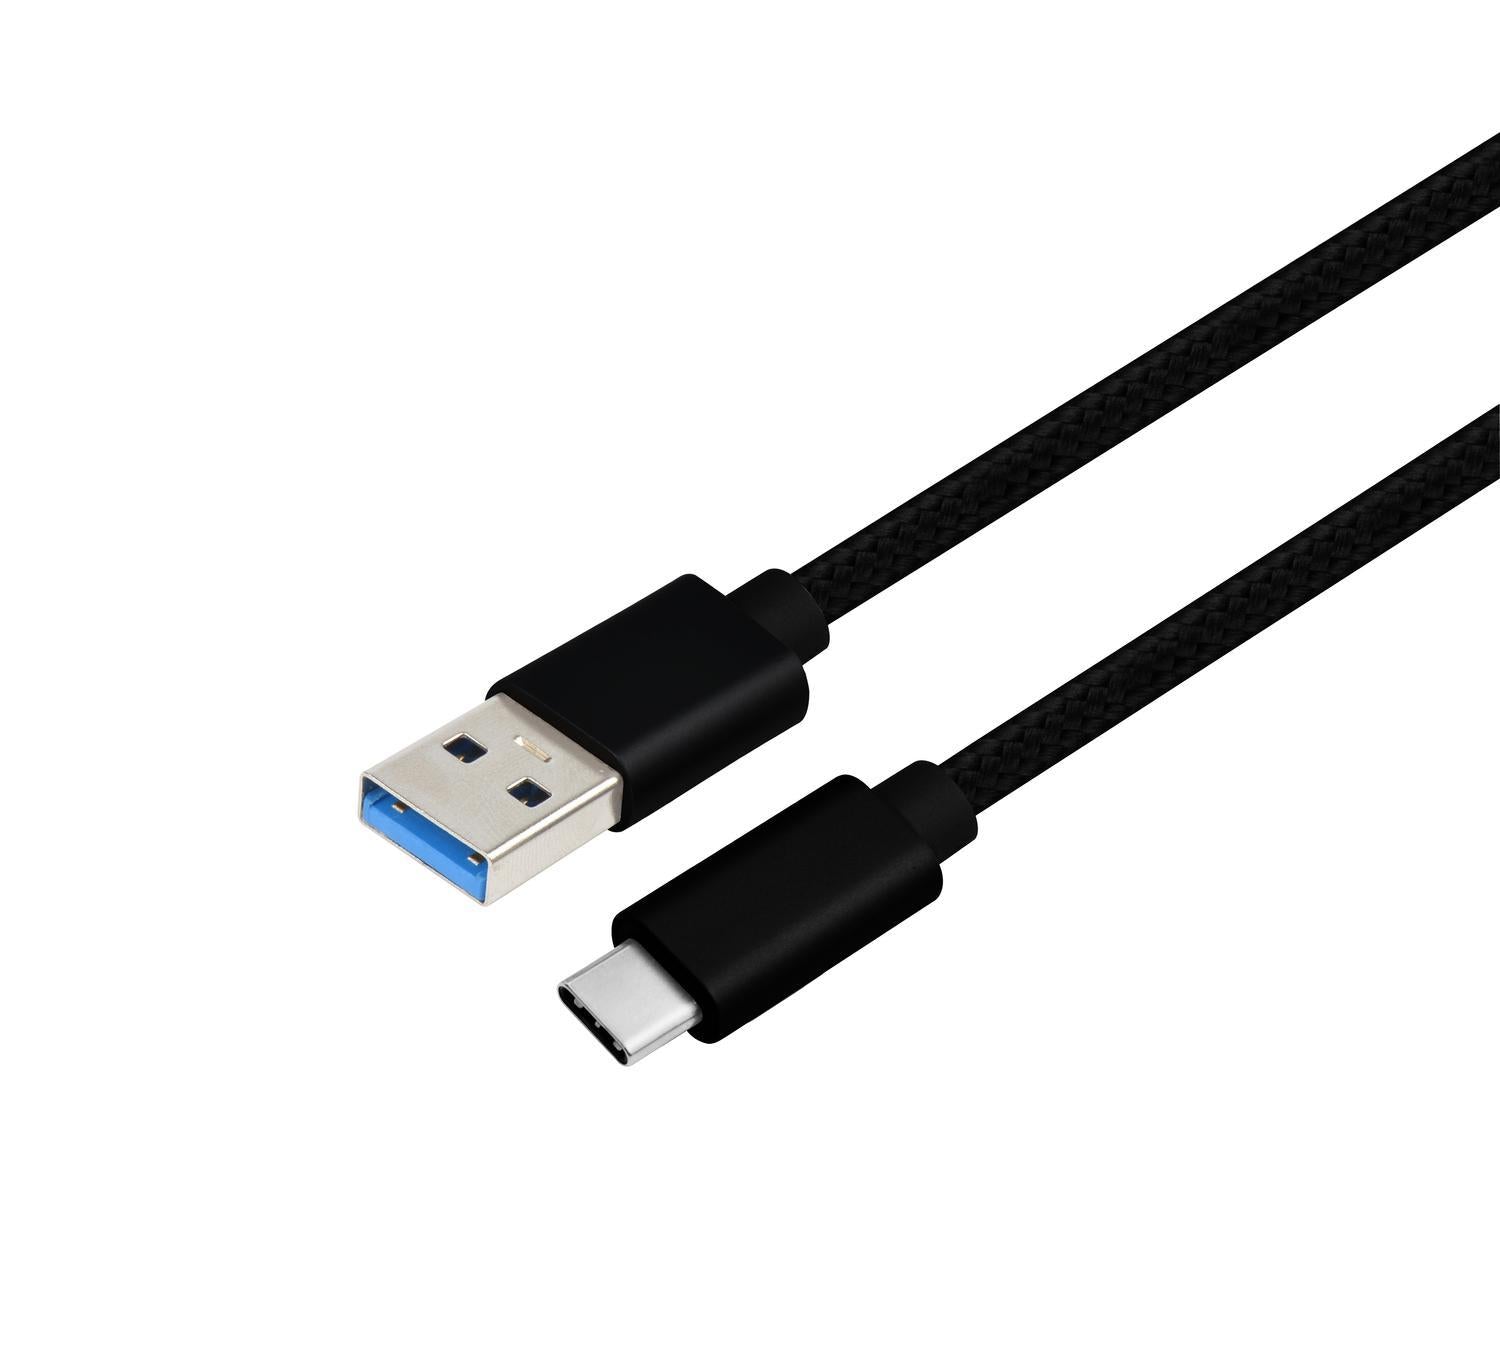 NÖRDIC 15cm USB C til USB En kabel USB3.1 Gen1 Rask lading 60W 5Gbps 3A, Nylon flettet svart